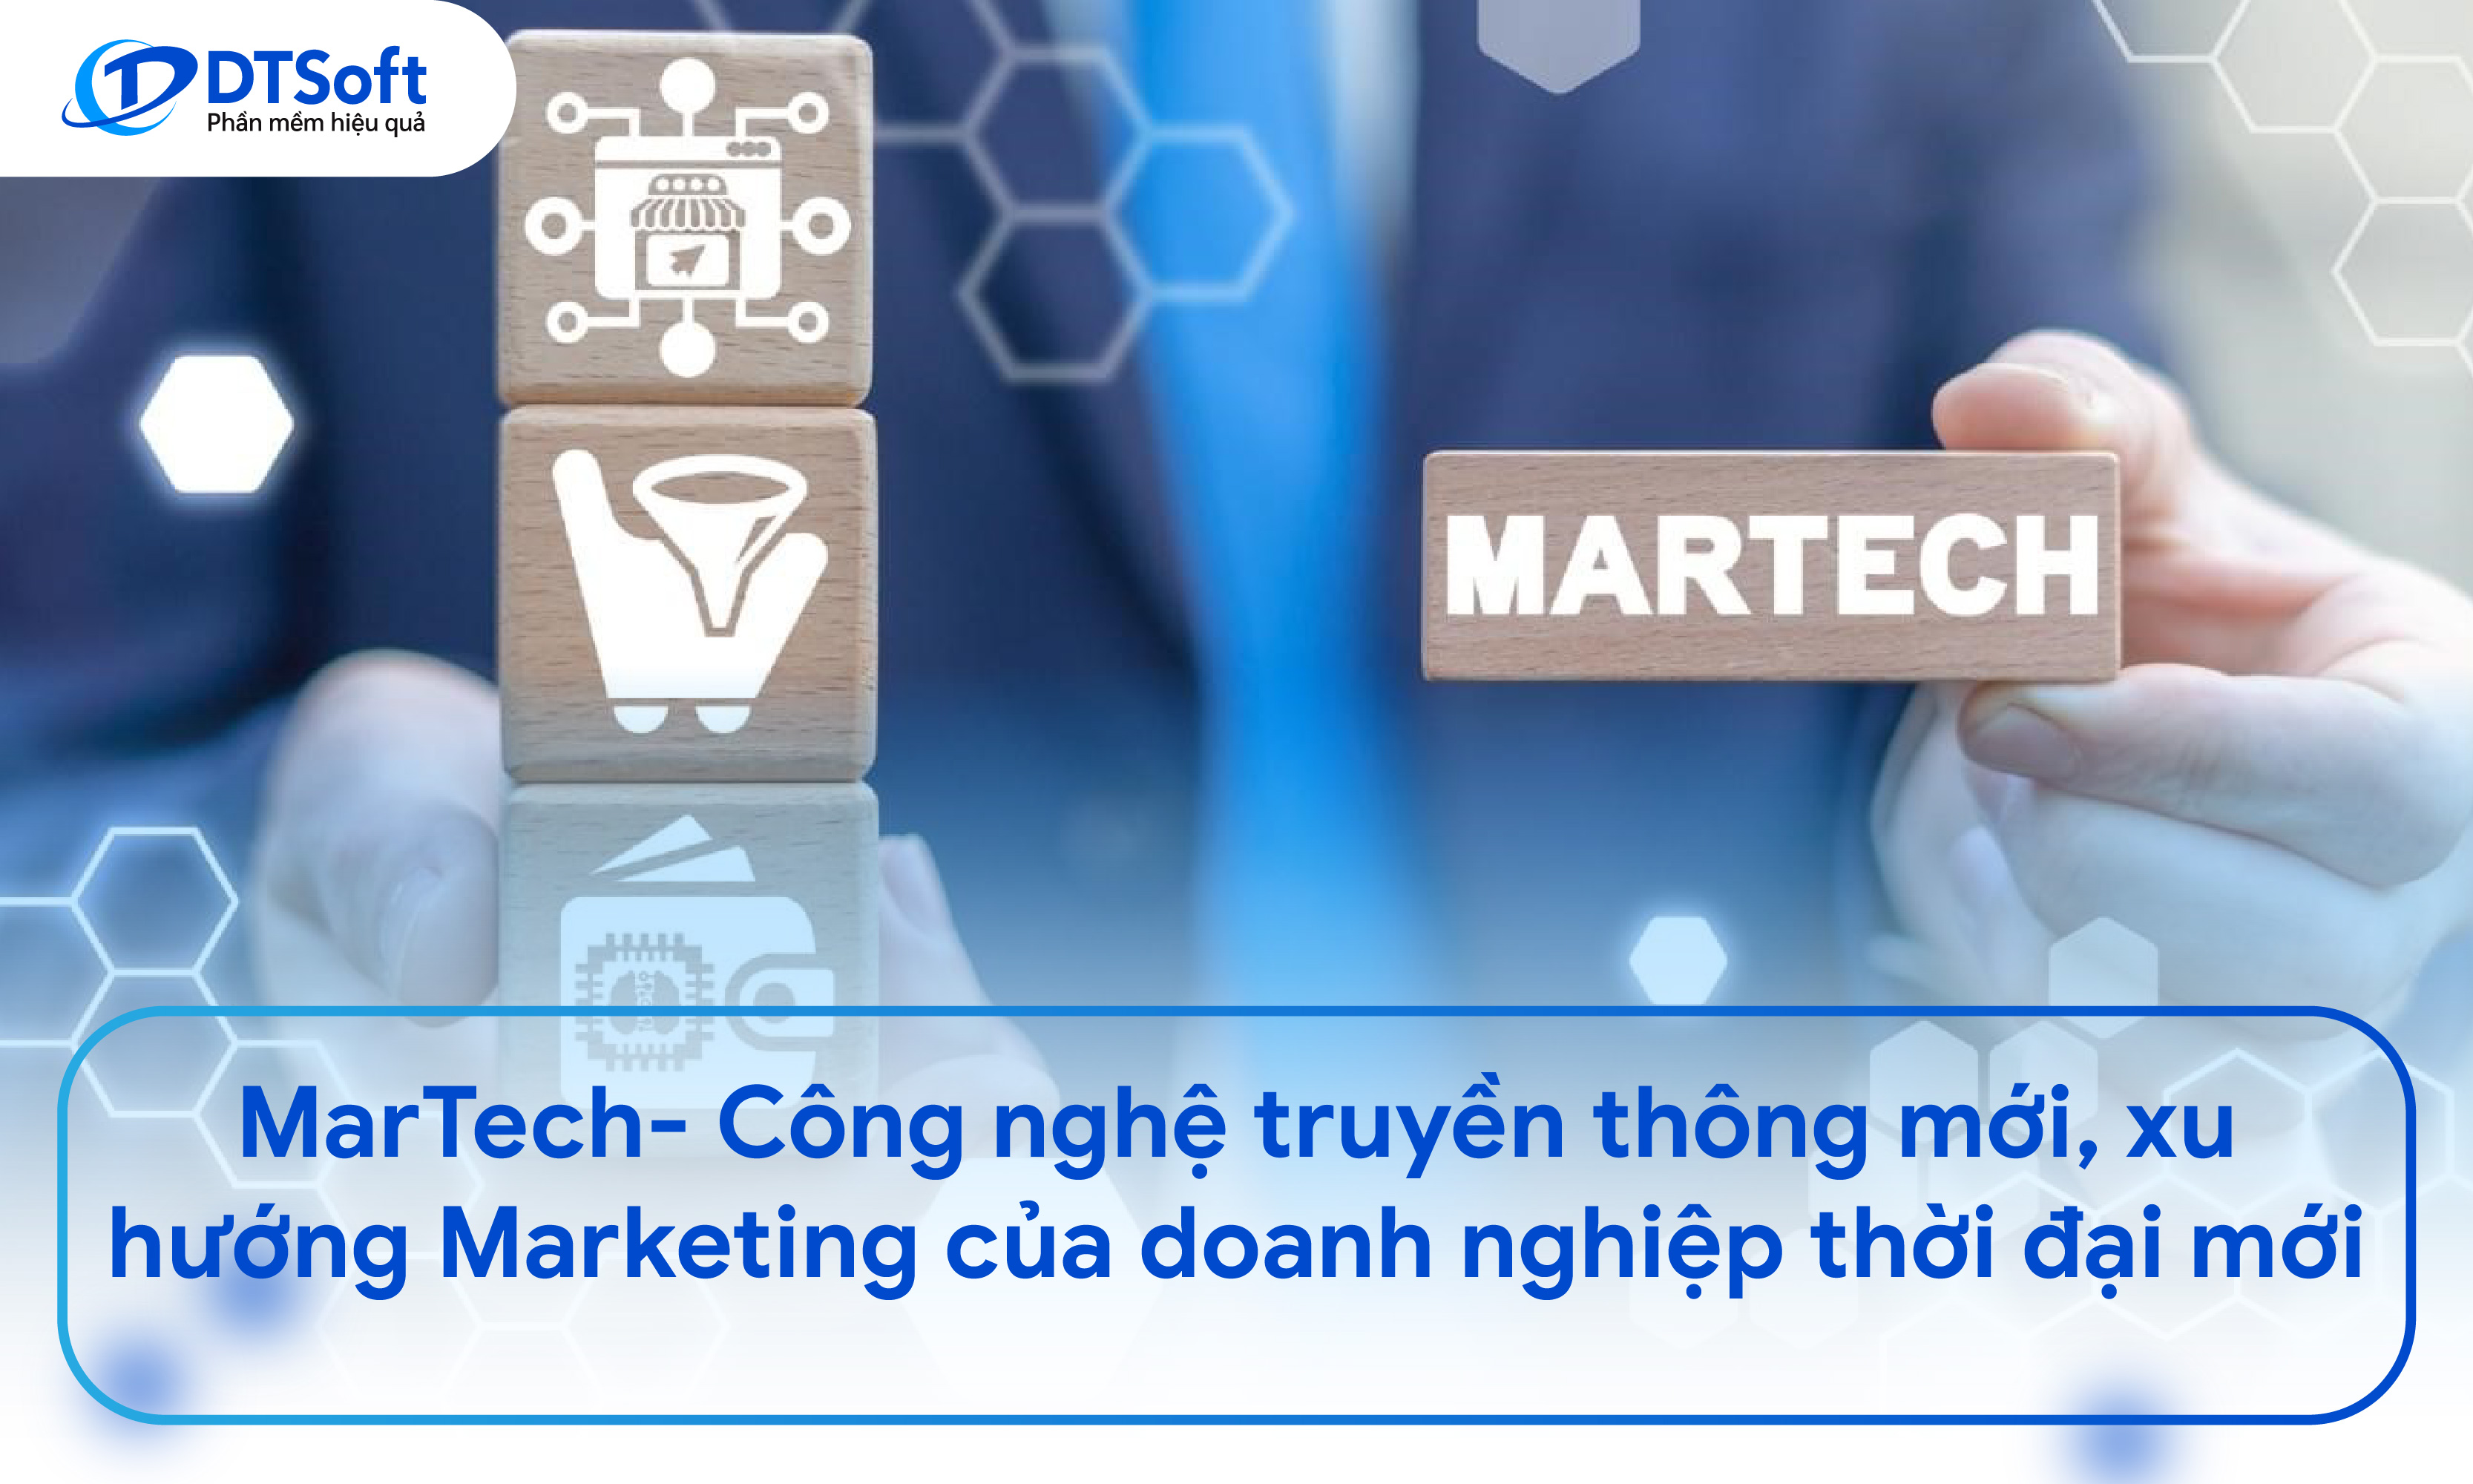 MarTech- Công nghệ truyền thông mới, xu hướng Marketing của doanh nghiệp thời đại mới